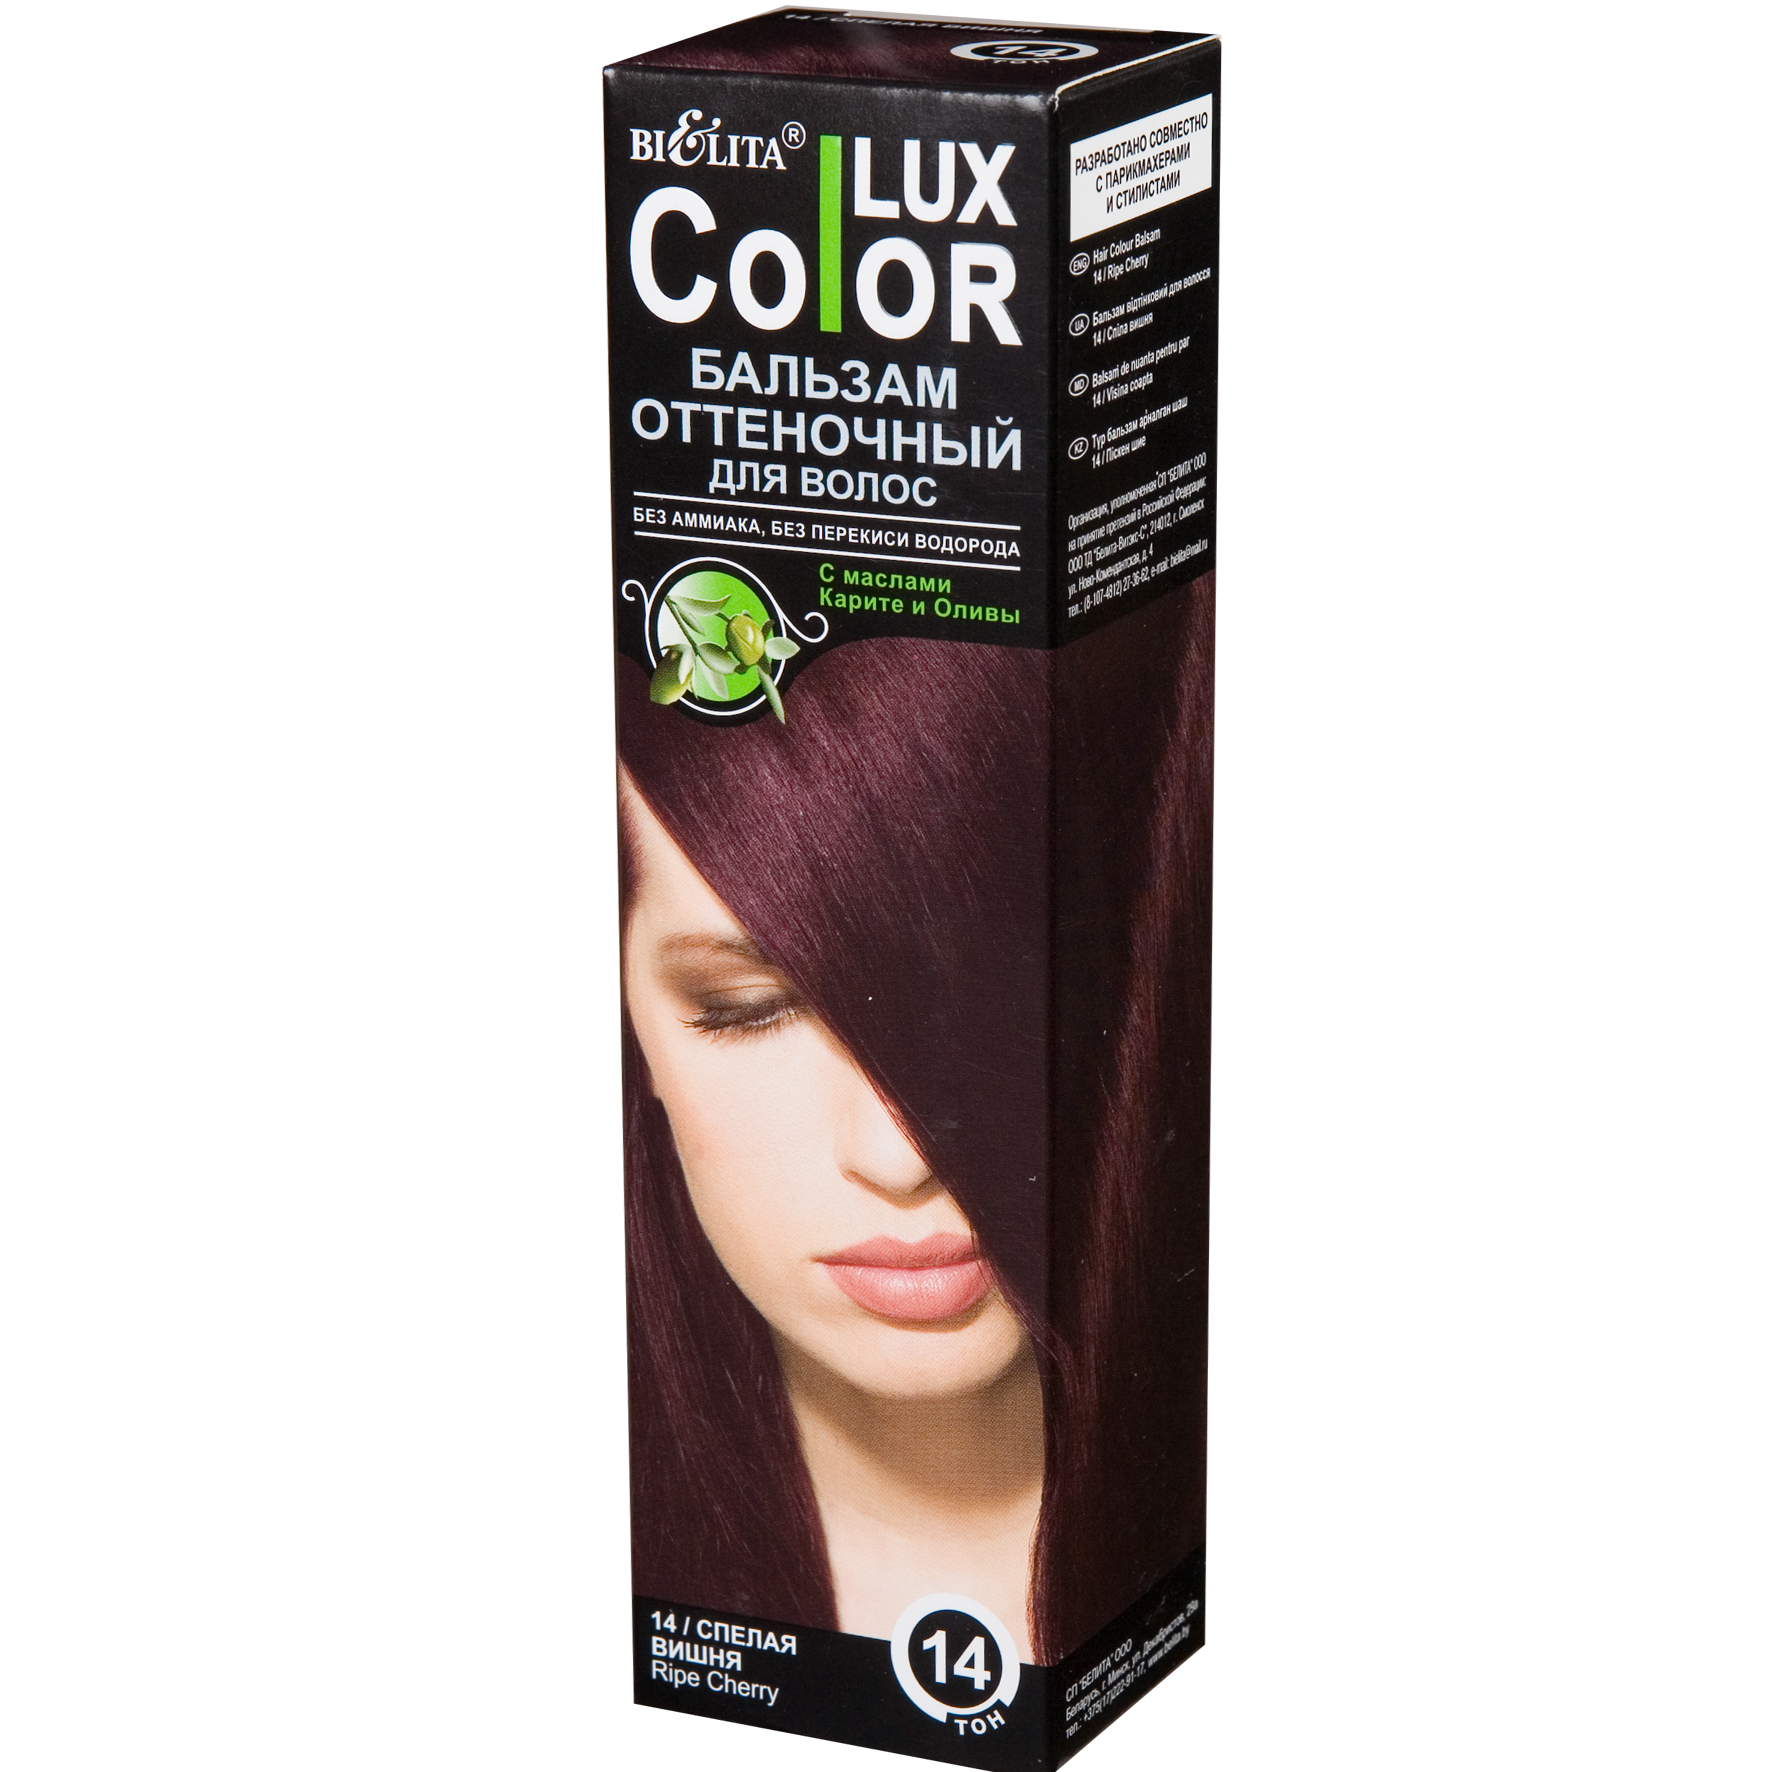 Оттеночные средства для волос. Бальзам Bielita Color Lux, тон 10 Медно-русый. Бальзам Bielita Color Lux, тон 14.1 махагон. Бальзам Bielita Color Lux, тон 11 каштан. Белита/Color Lux/ бальзам оттеночный для волос спелая вишня / тон 14 / 100 мл.